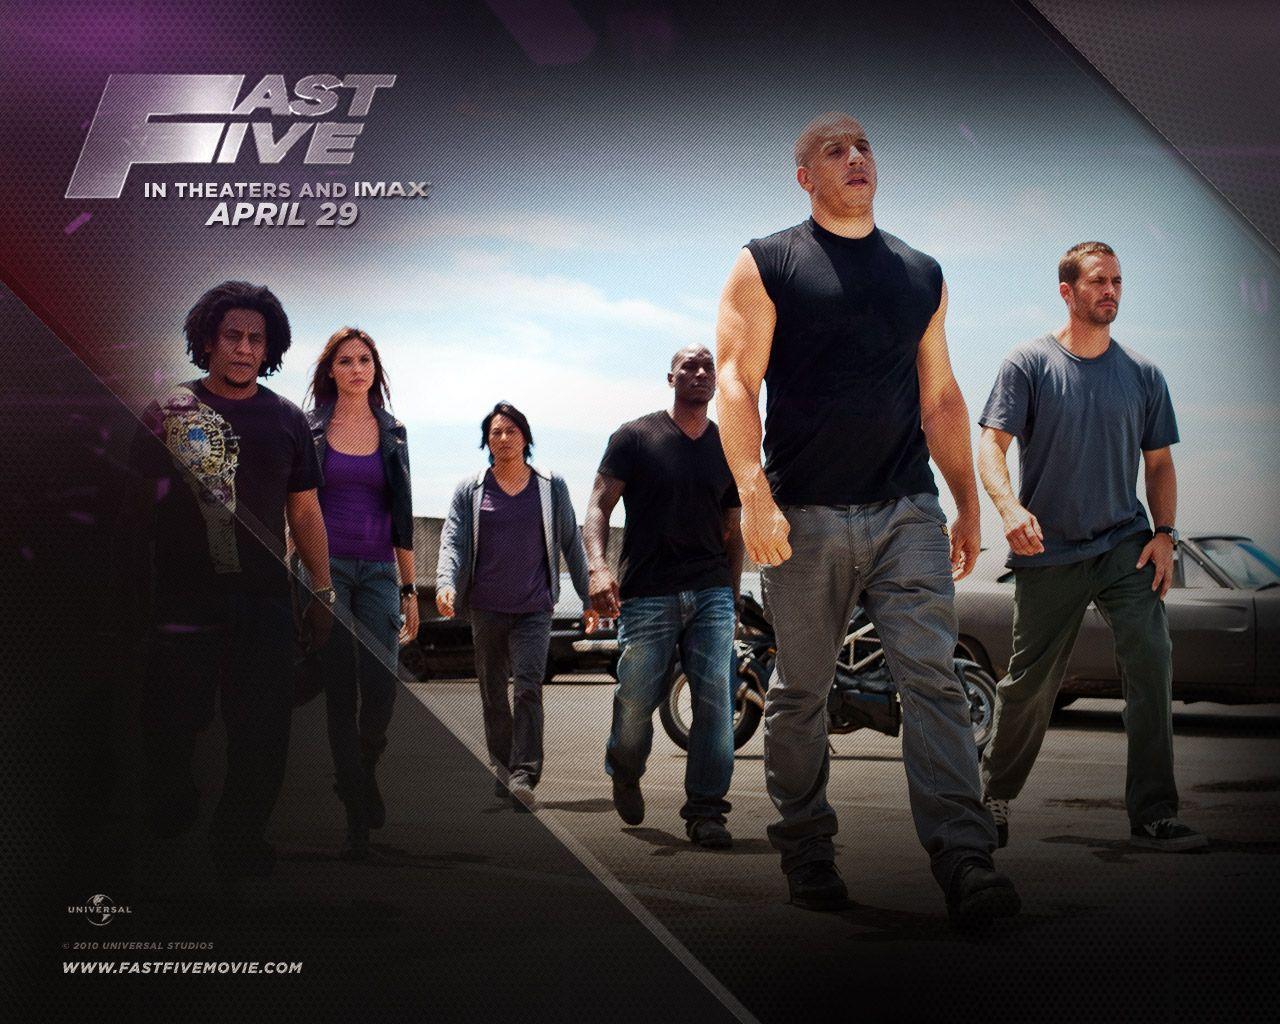 Vin Diesel in Fast Five Wallpaper. Prateak Movie Review